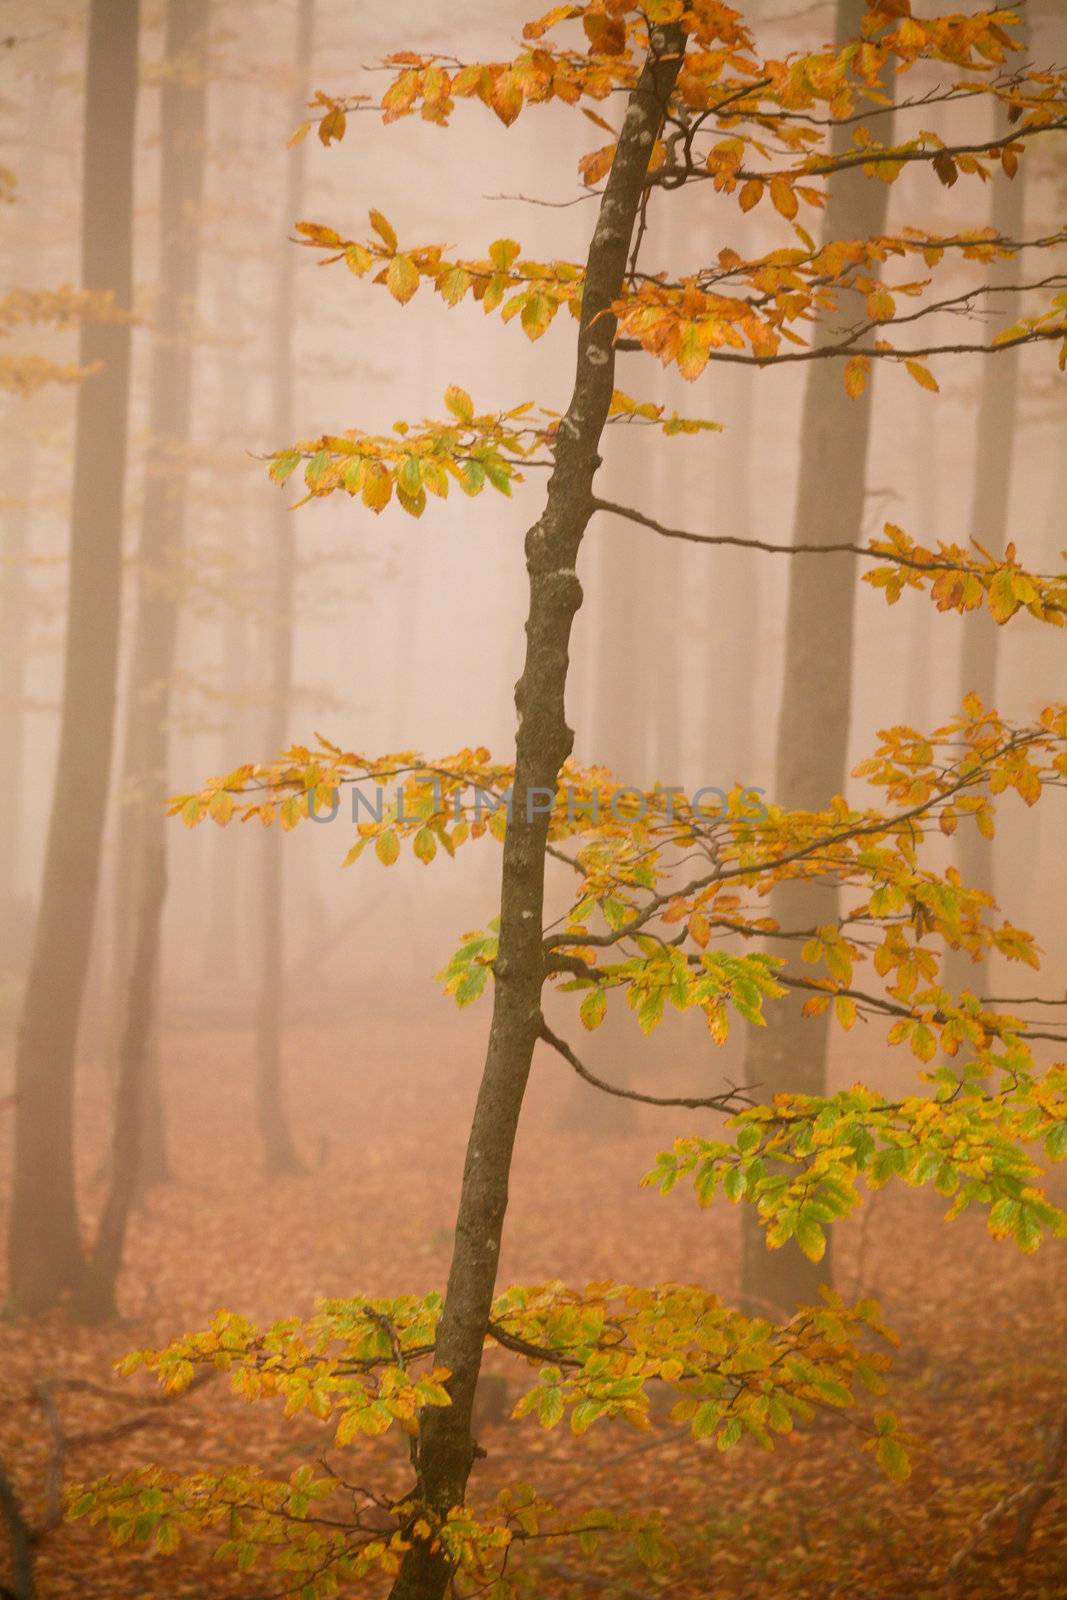 Misty forest by velkol